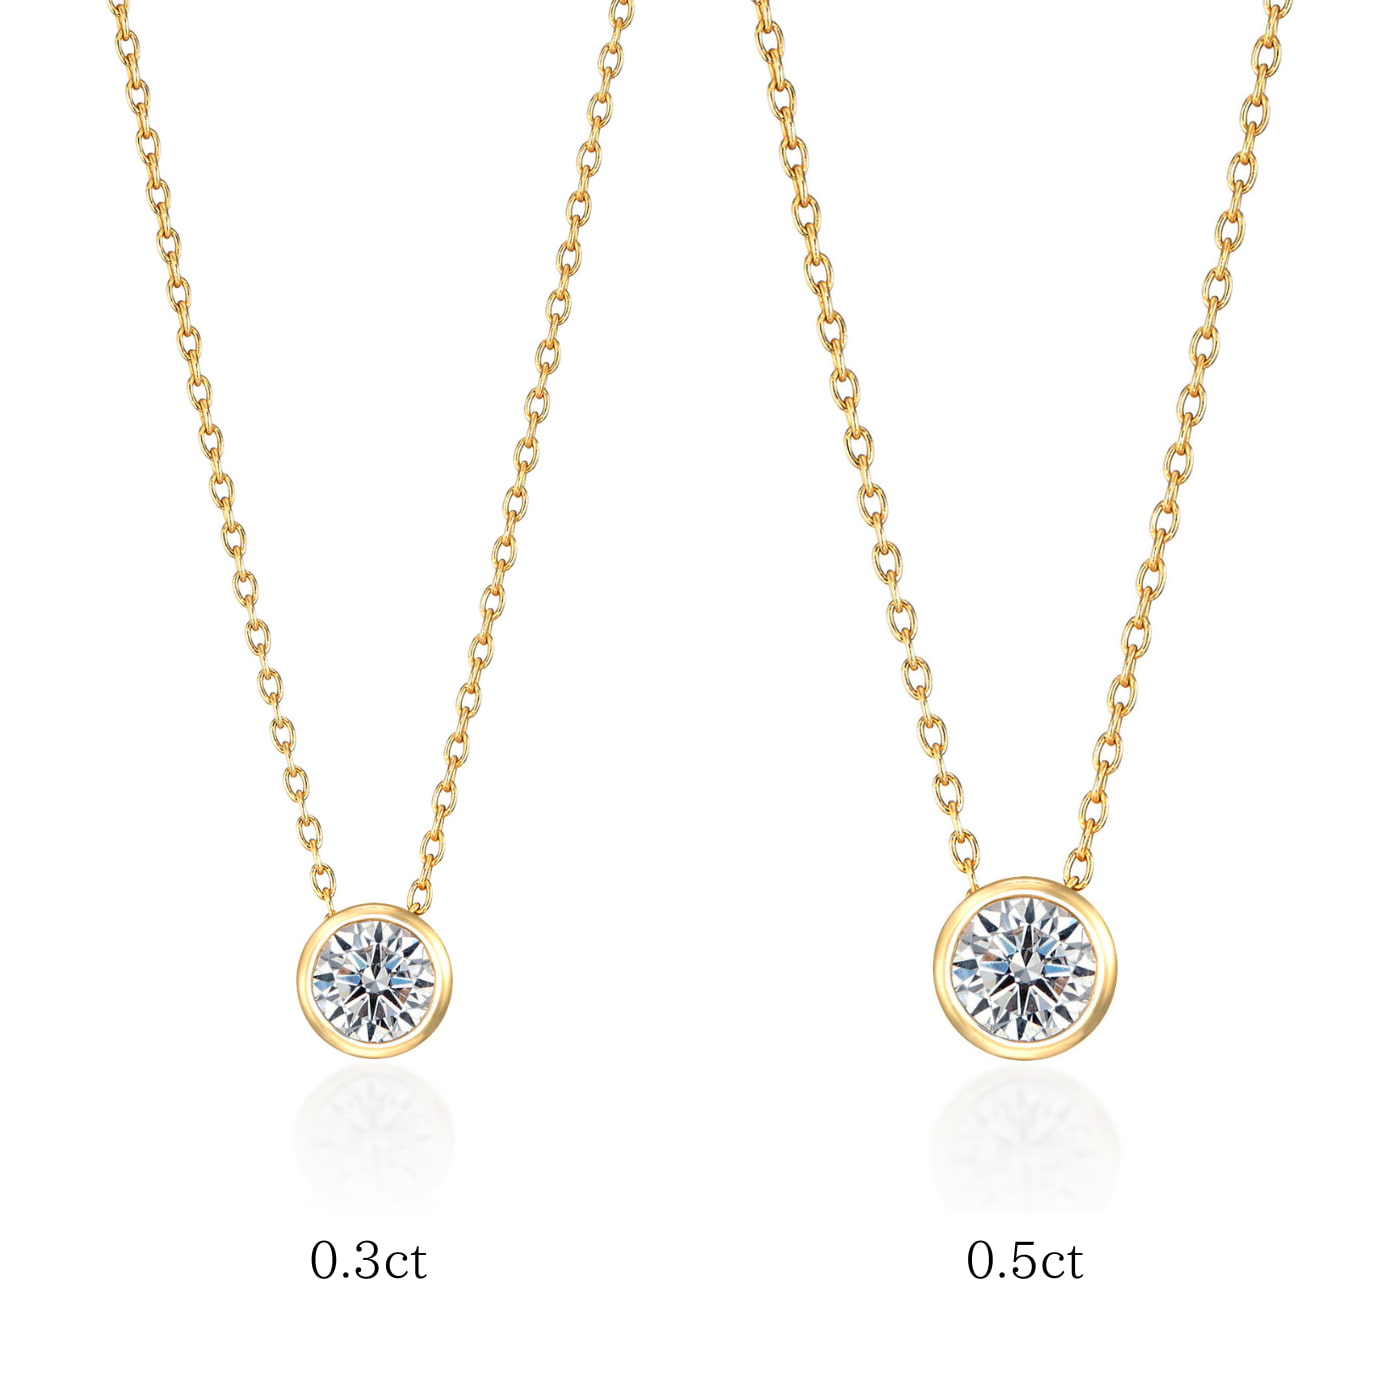 ラボグロウンダイヤモンド専門店『september5』べセルセッティング・K18イエローゴールドネックレス0.３ctと0.5ctの比較画像